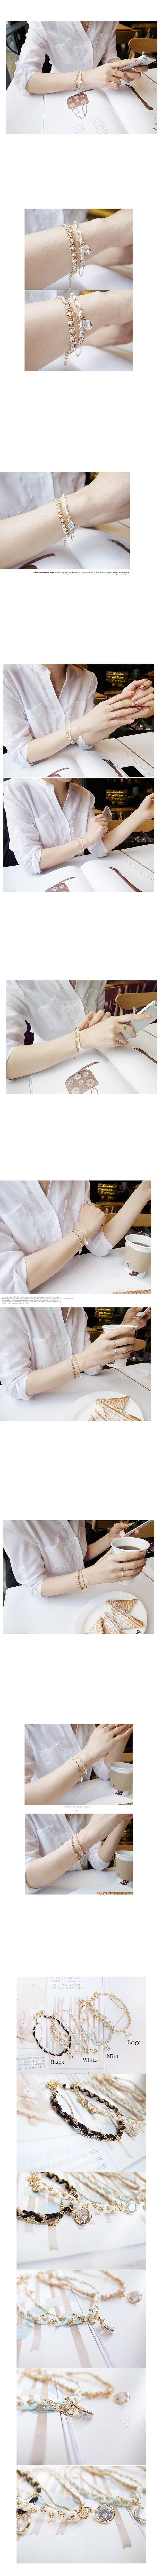 韓國 NaniWorld 雙材質編織佐單鑽氛圍手鏈 #2178 白色